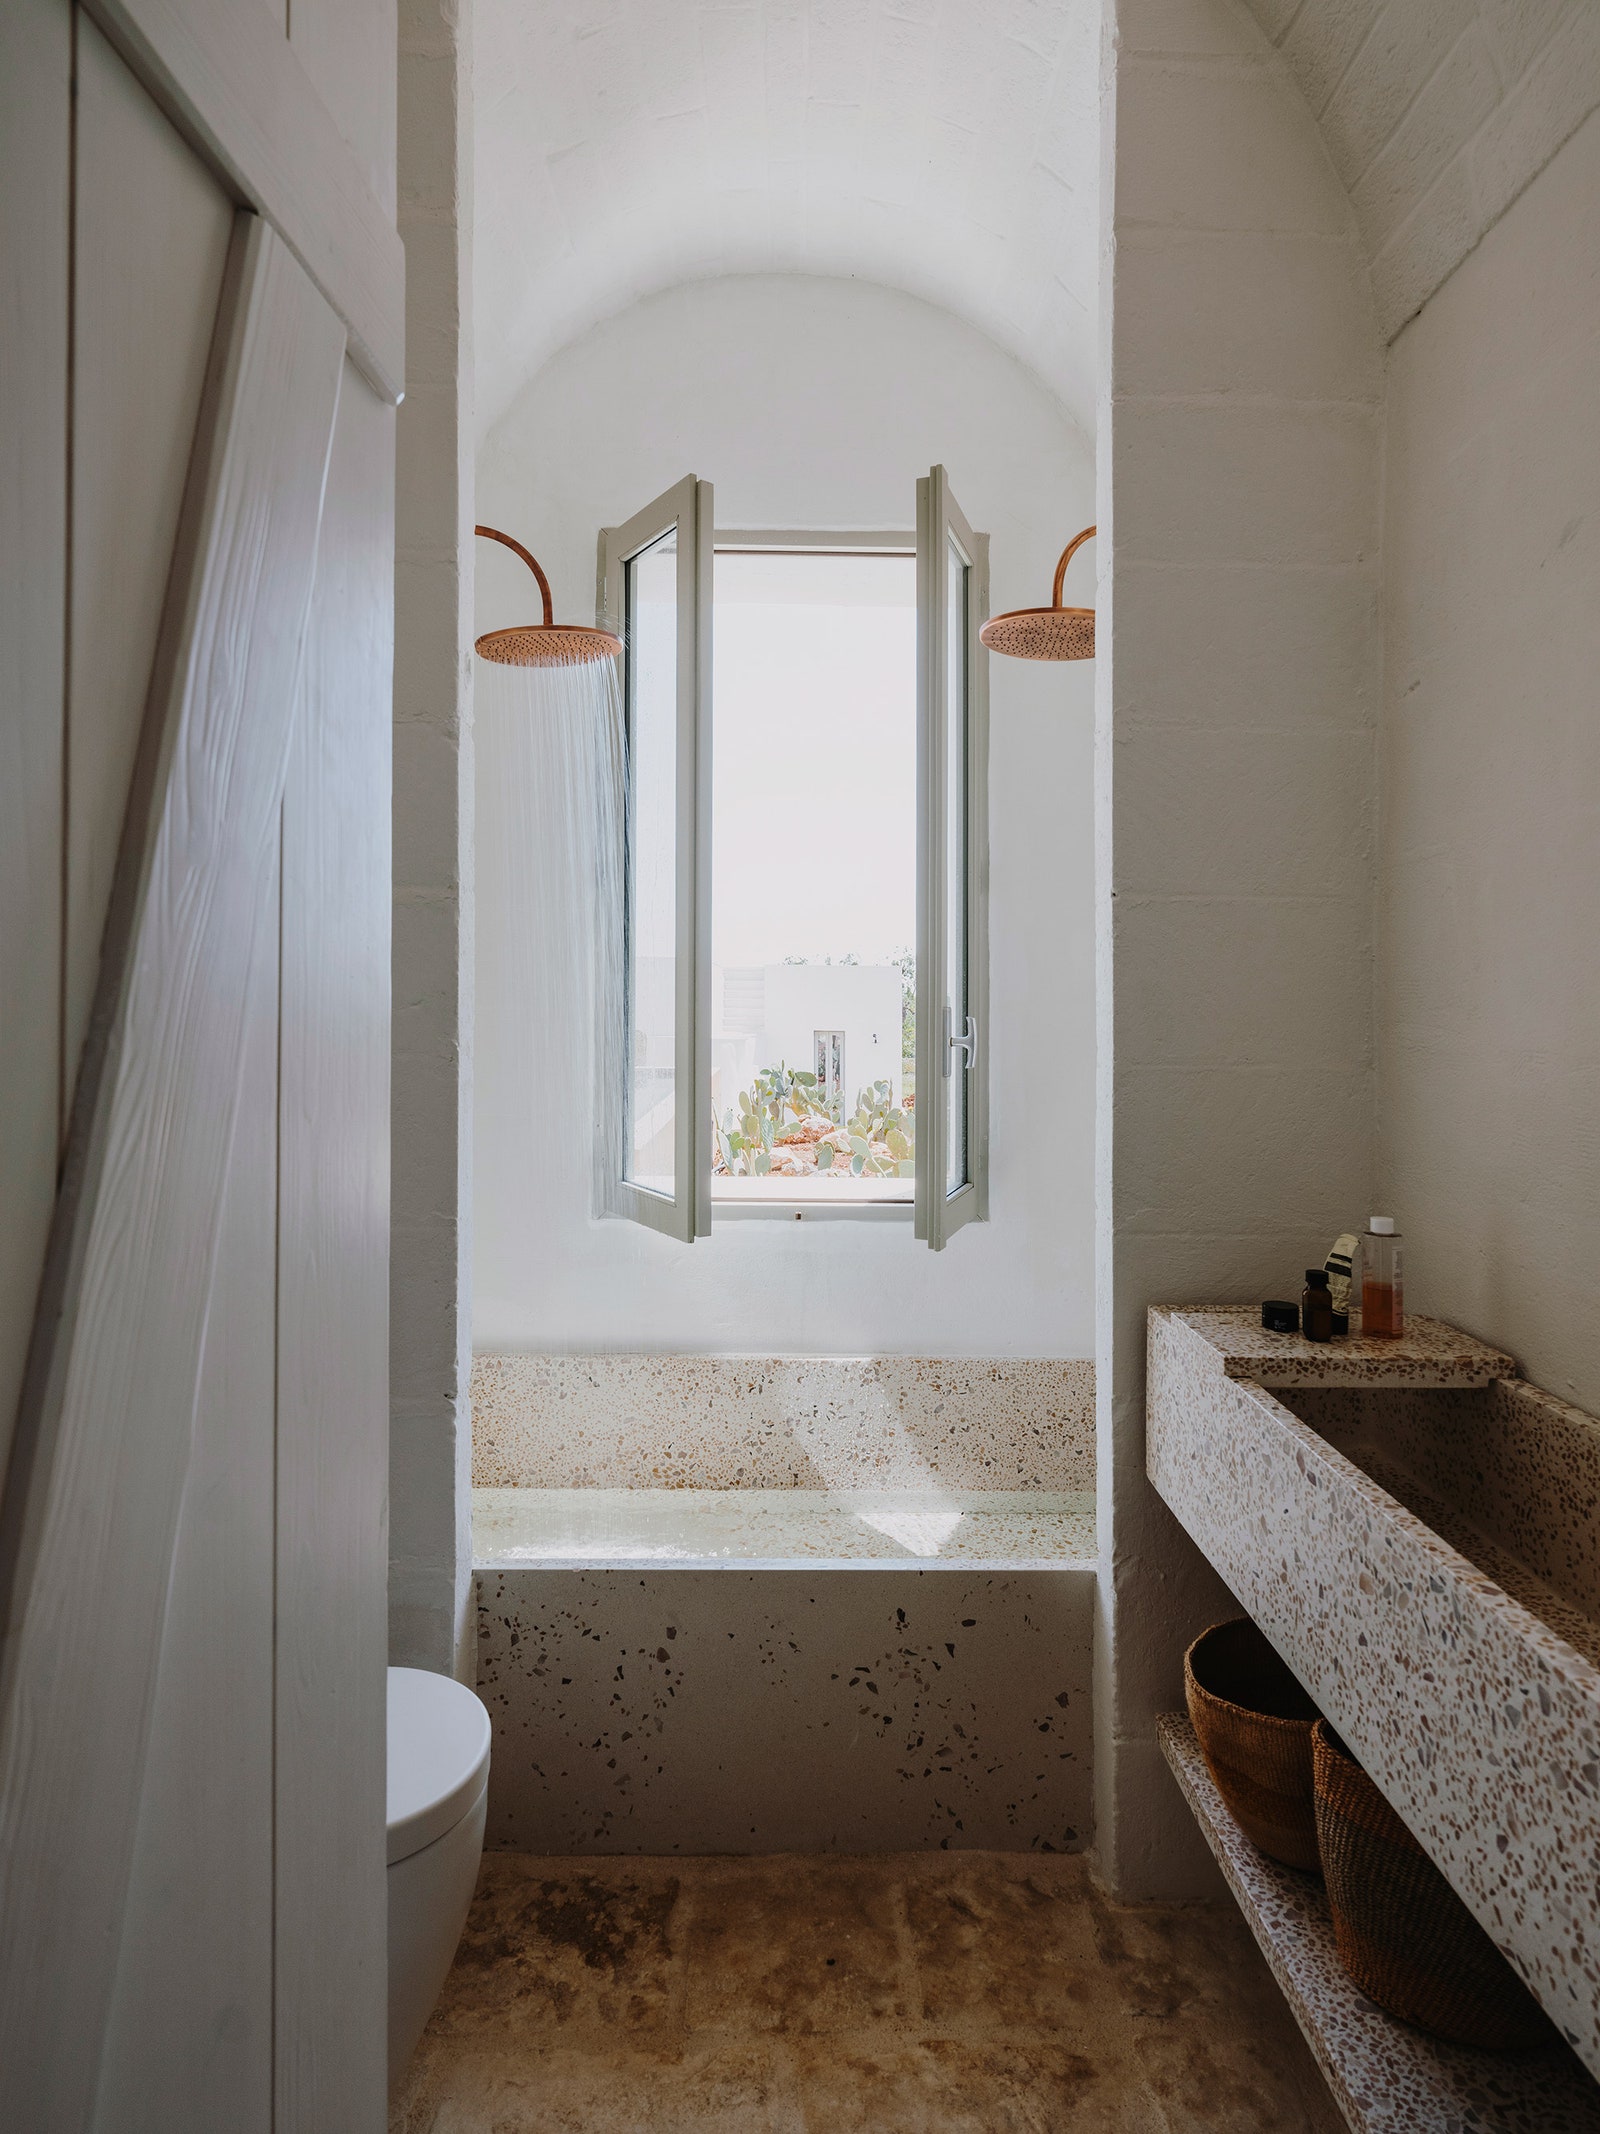 Архитектура и интерьеры белоснежной виллы для отдыха на юге Италии